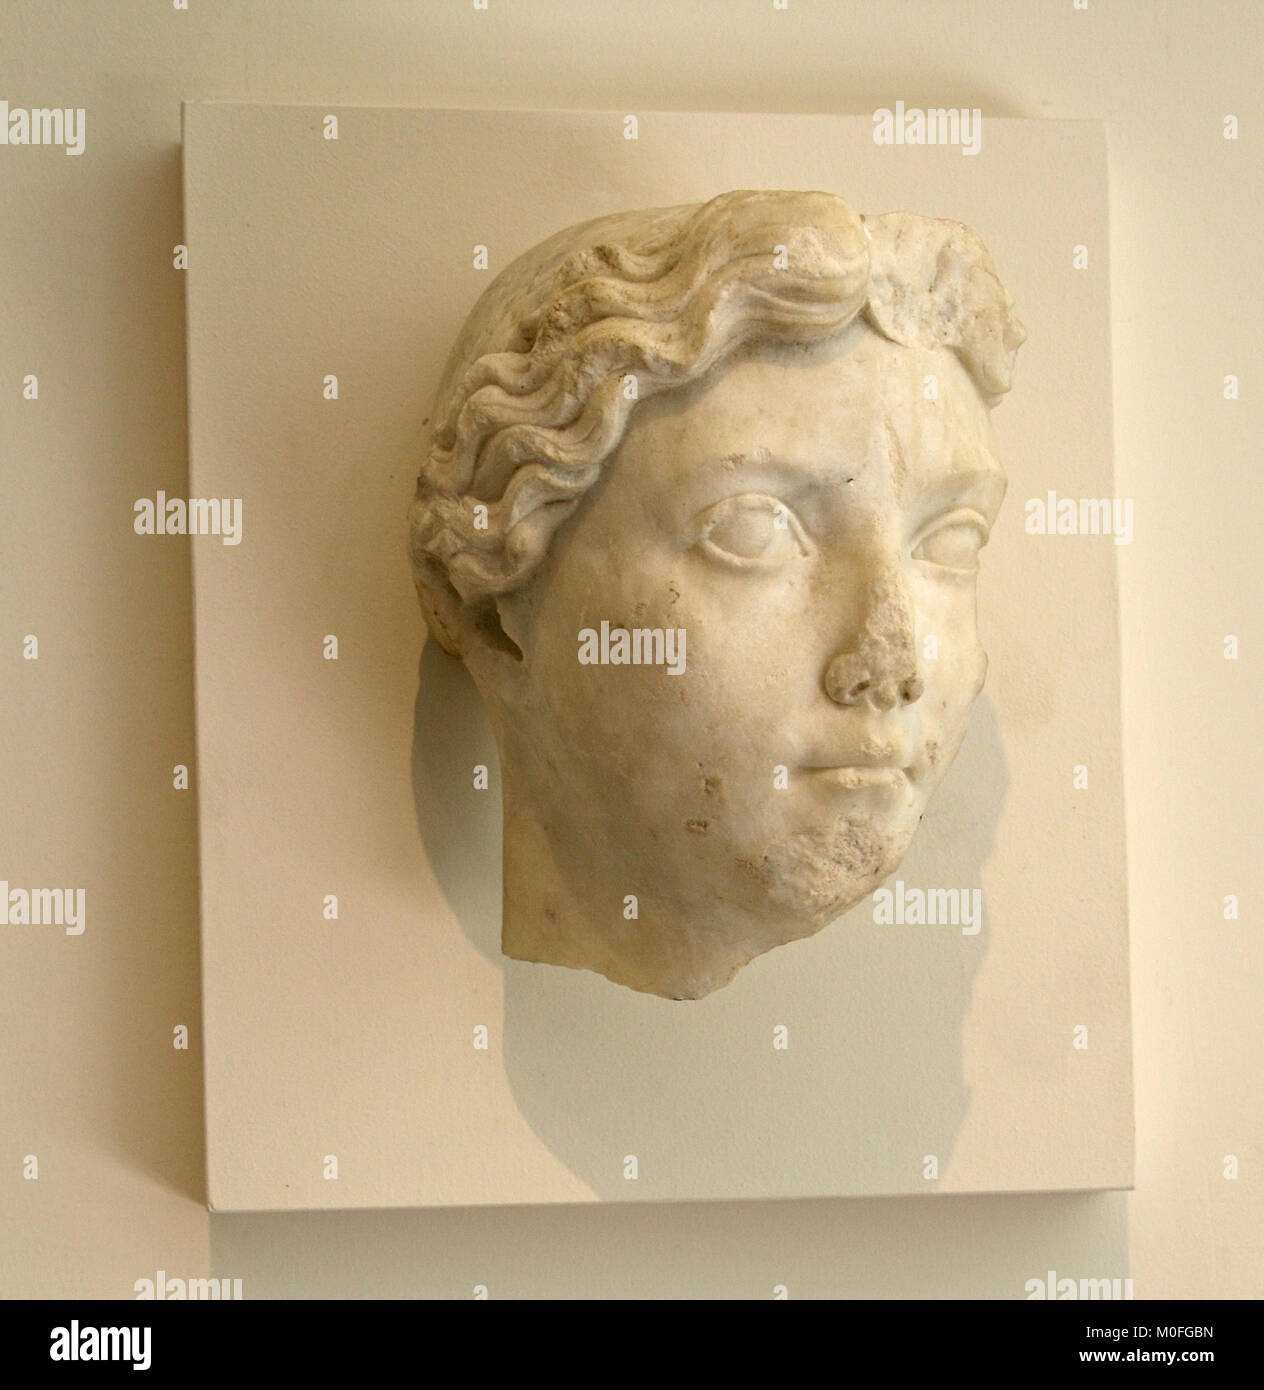 En Portrait de Livie, romaine impériale, tiberan précoce né en 58 av. J.-C.-29 après J.-C., le Metropolitan Museum of Art (le MET), Upper Manhattan, New Y Banque D'Images